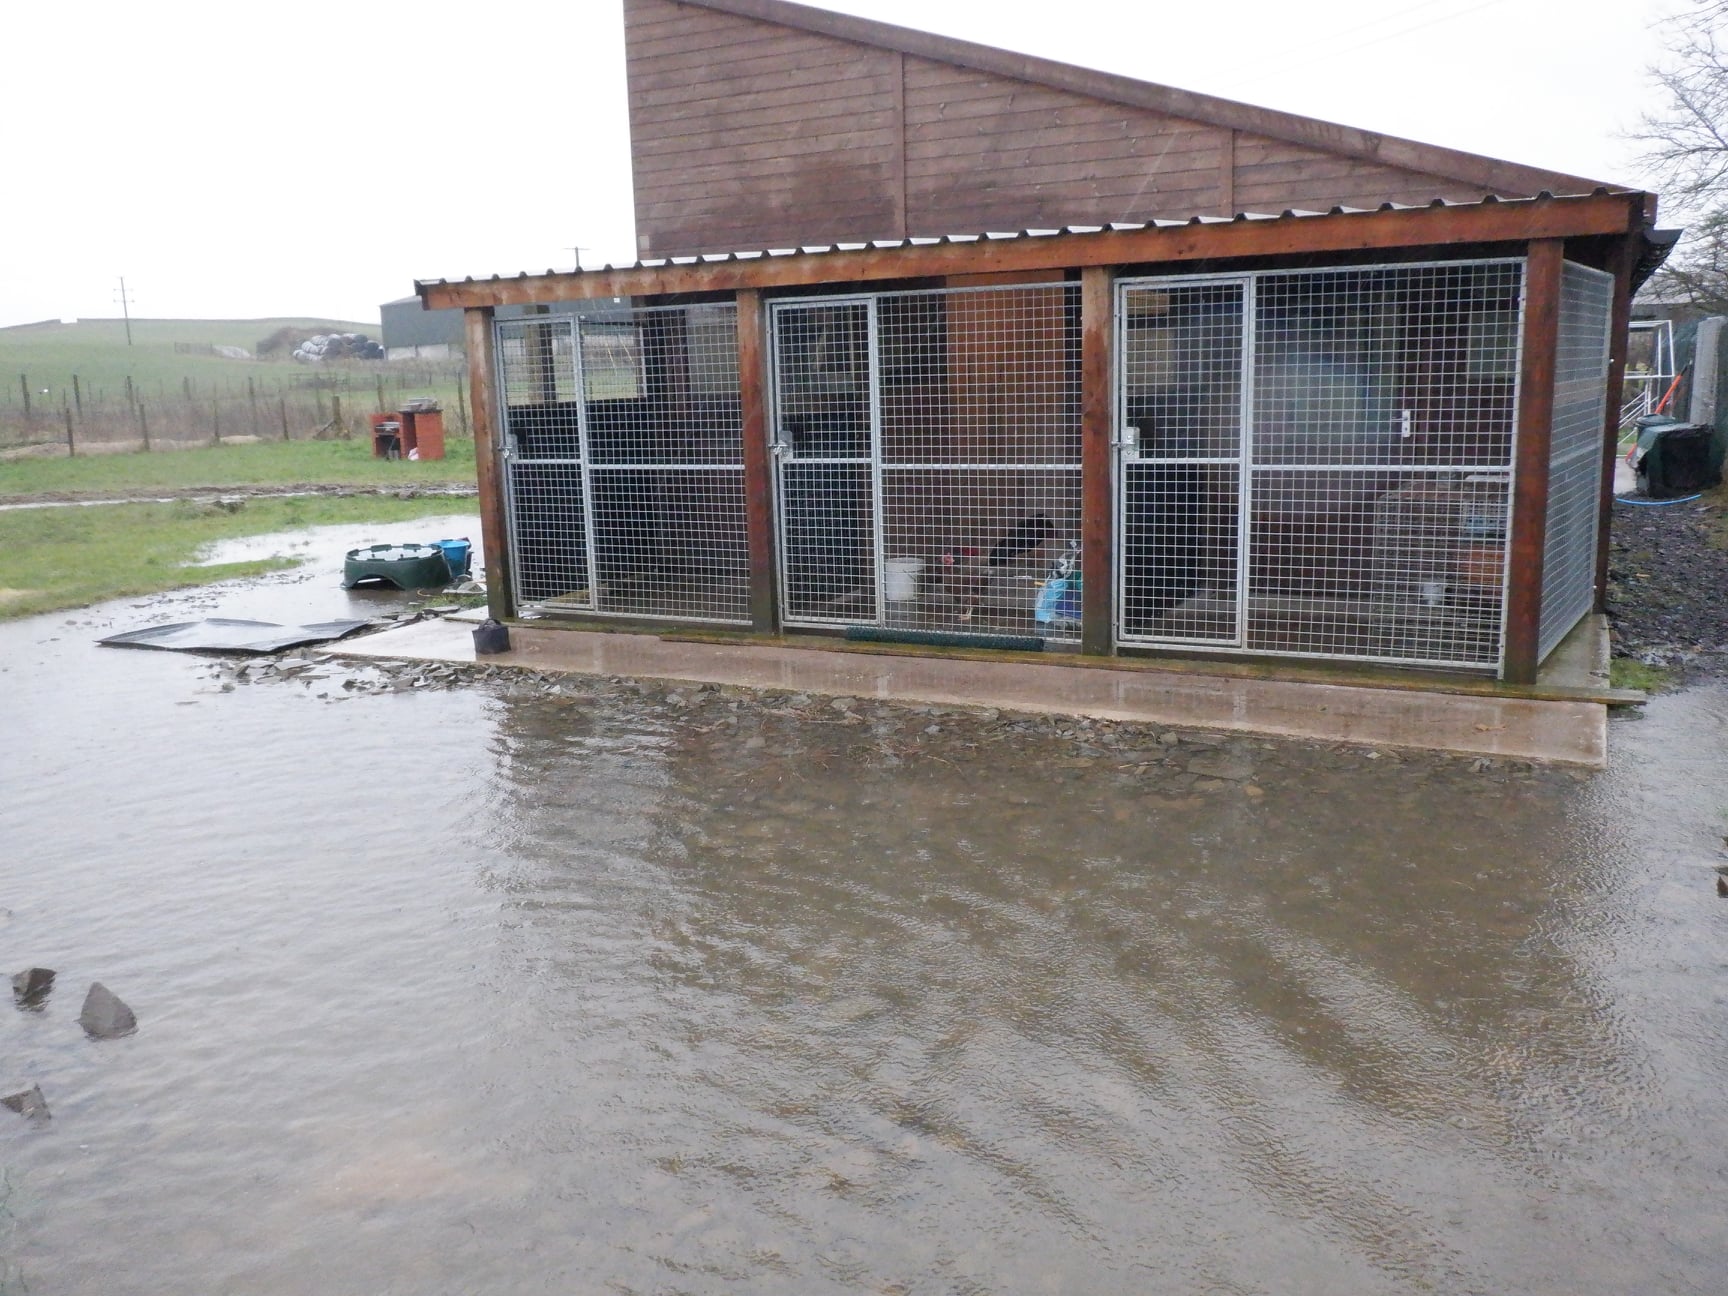 Floods threaten animal hospice